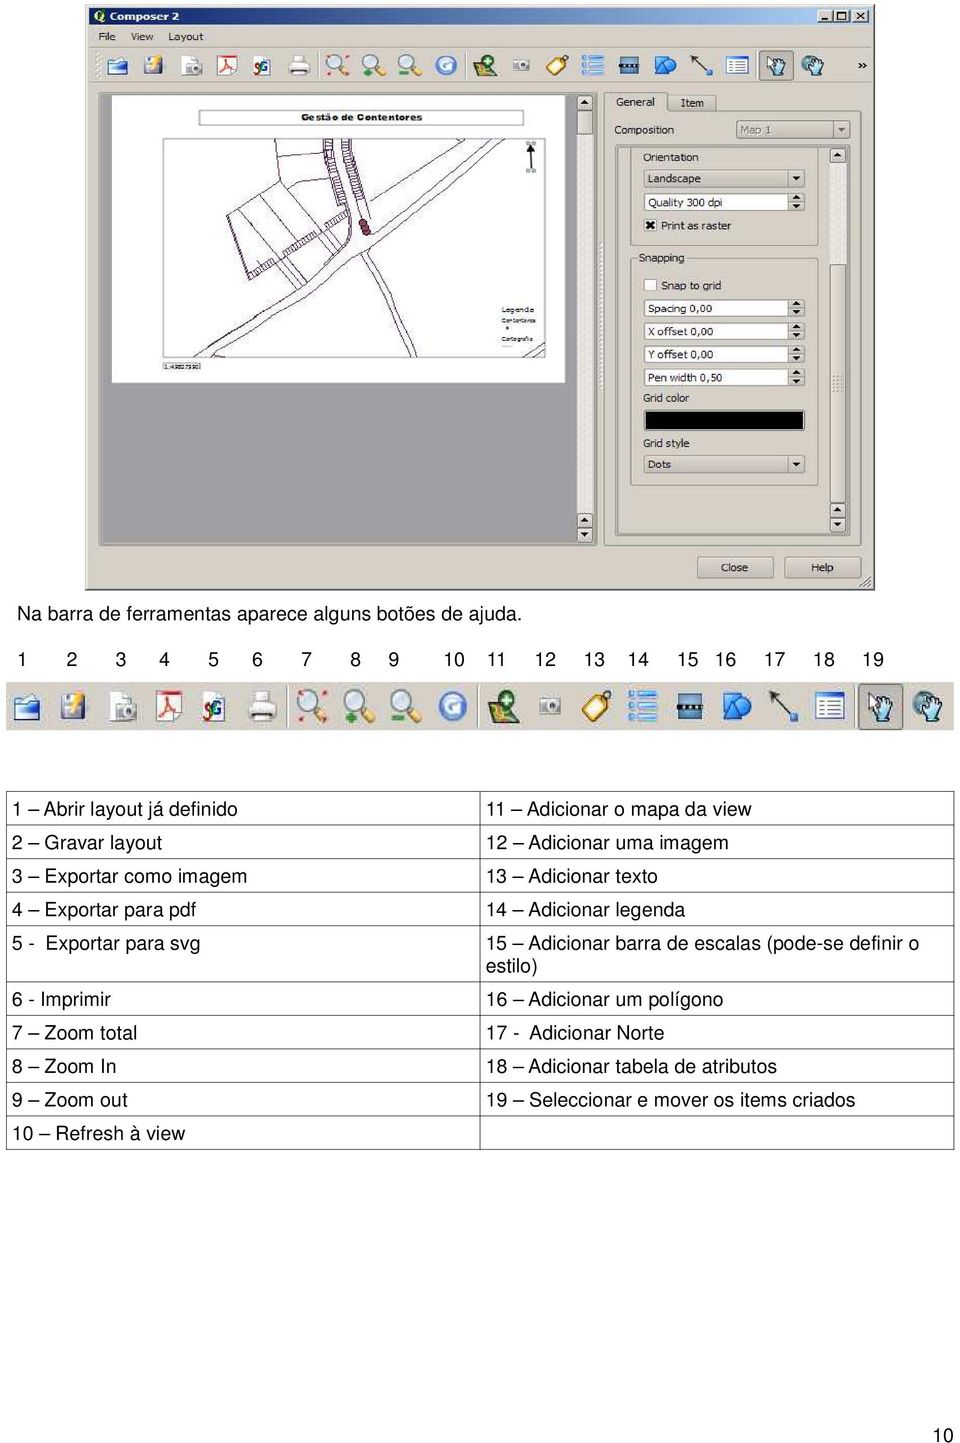 imagem 3 Exportar como imagem 13 Adicionar texto 4 Exportar para pdf 14 Adicionar legenda 5 - Exportar para svg 15 Adicionar barra de